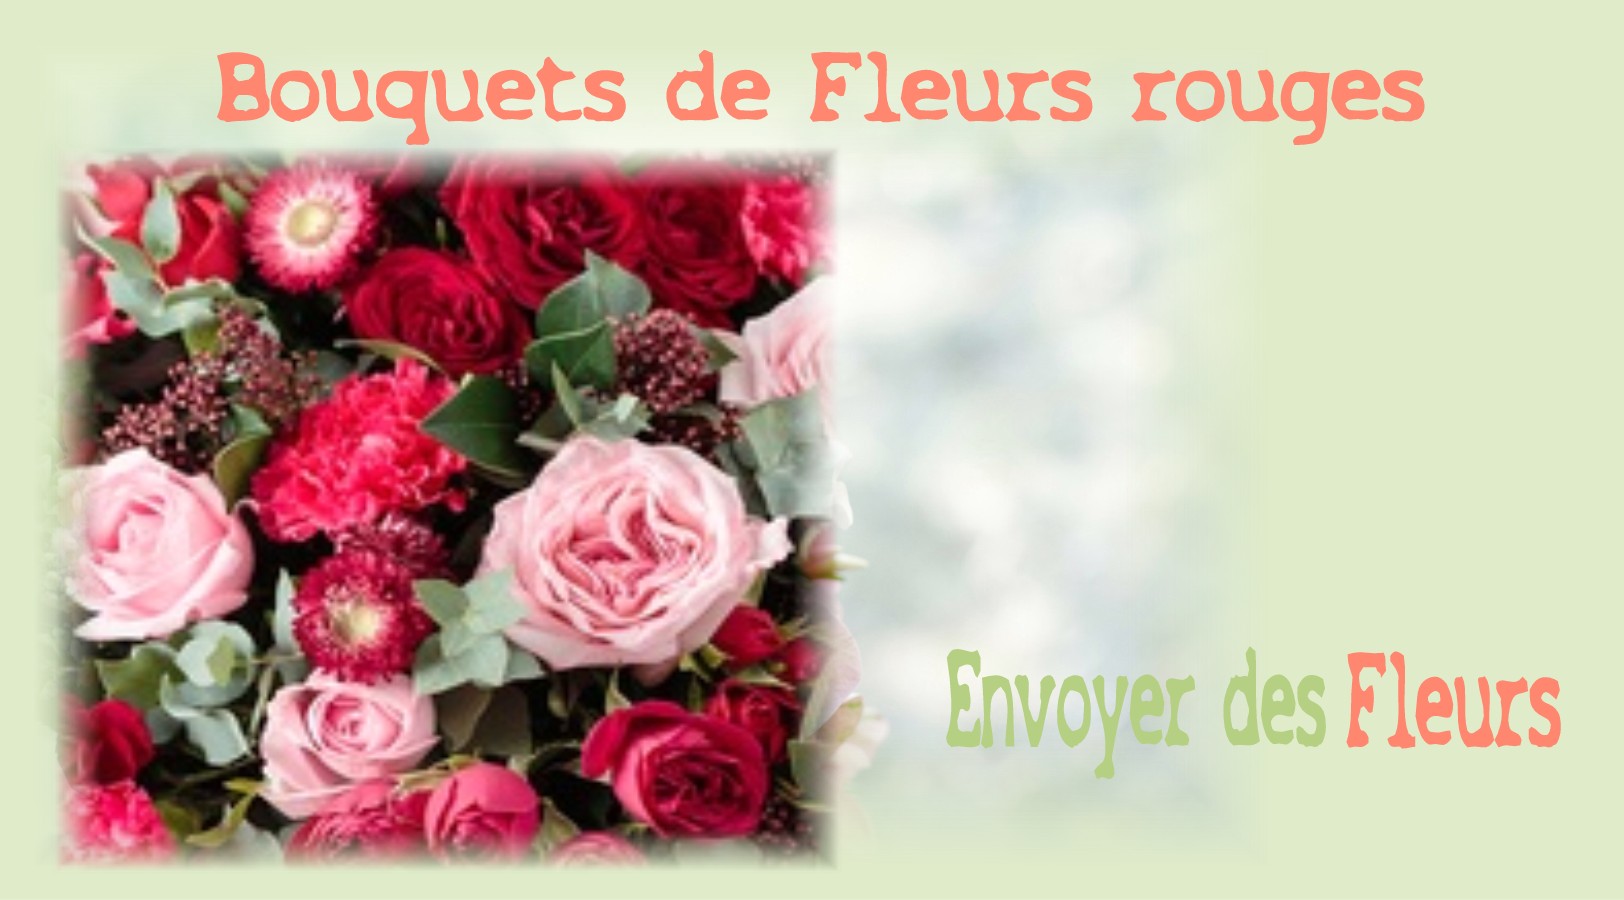 BOUQUETS DE FLEURS ROUGES - FLEURISTE MARSEILLE (13) - ENVOYER DES FLEURS